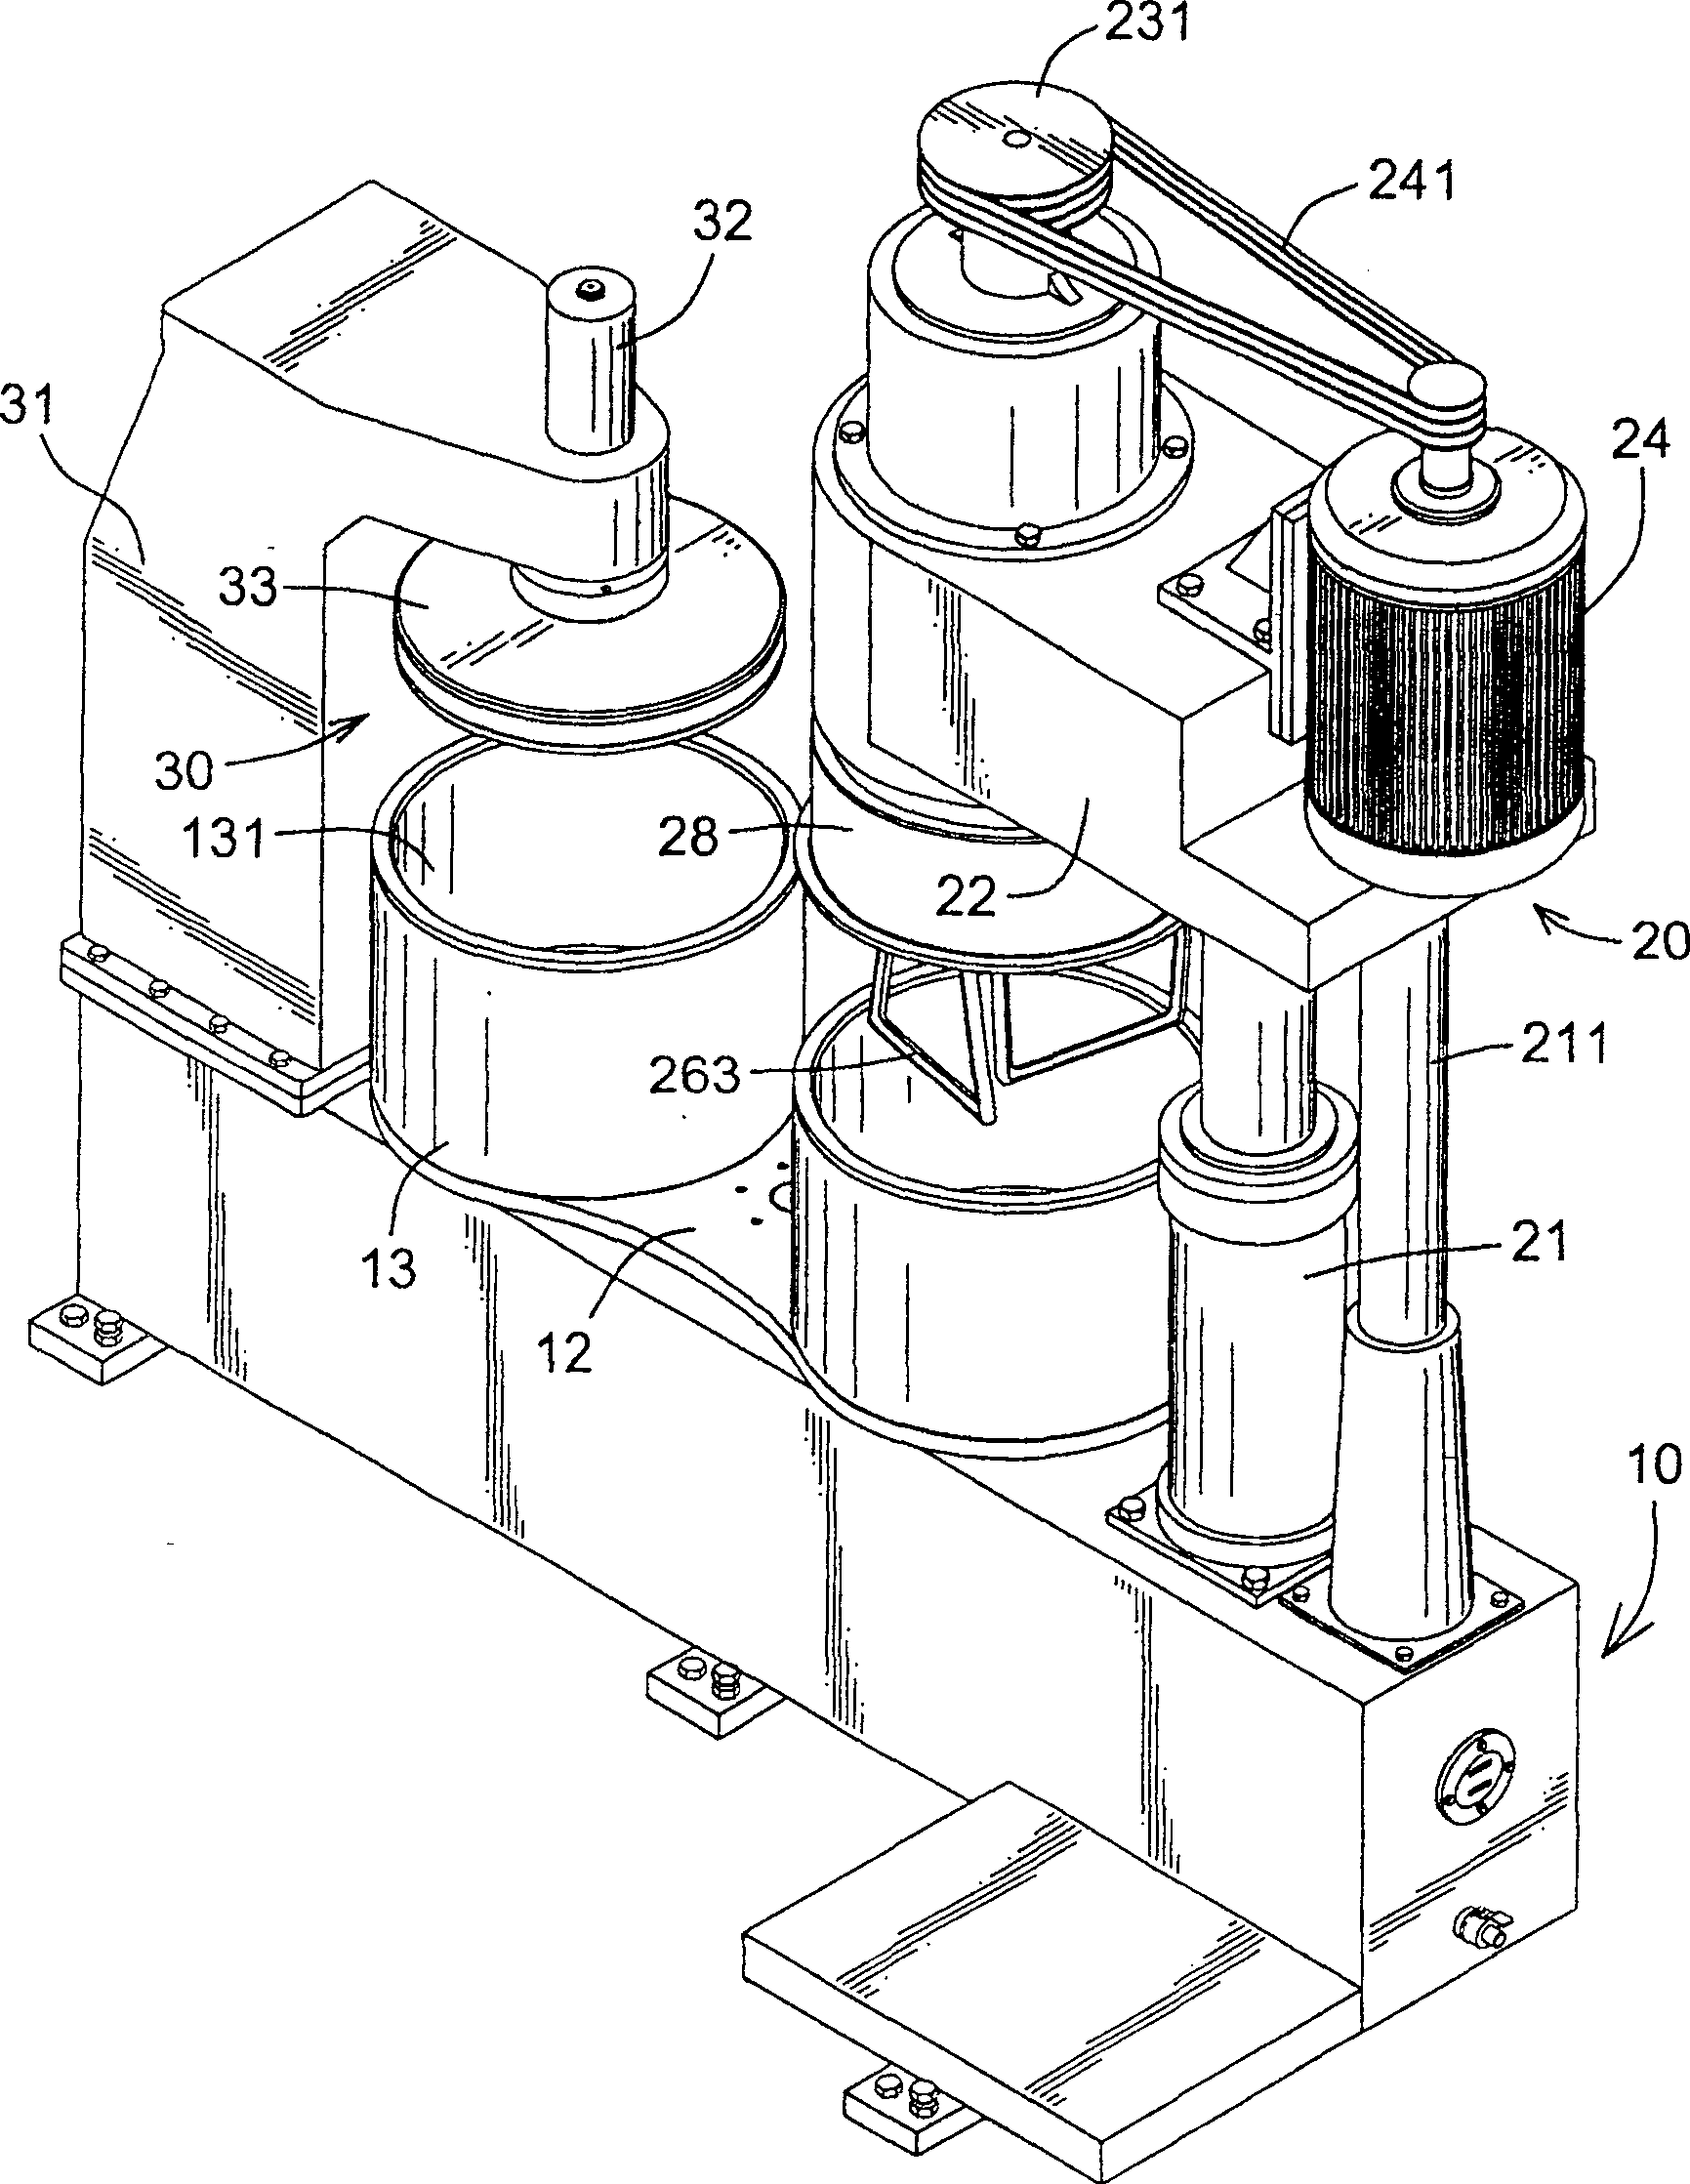 Liquid stirring machine